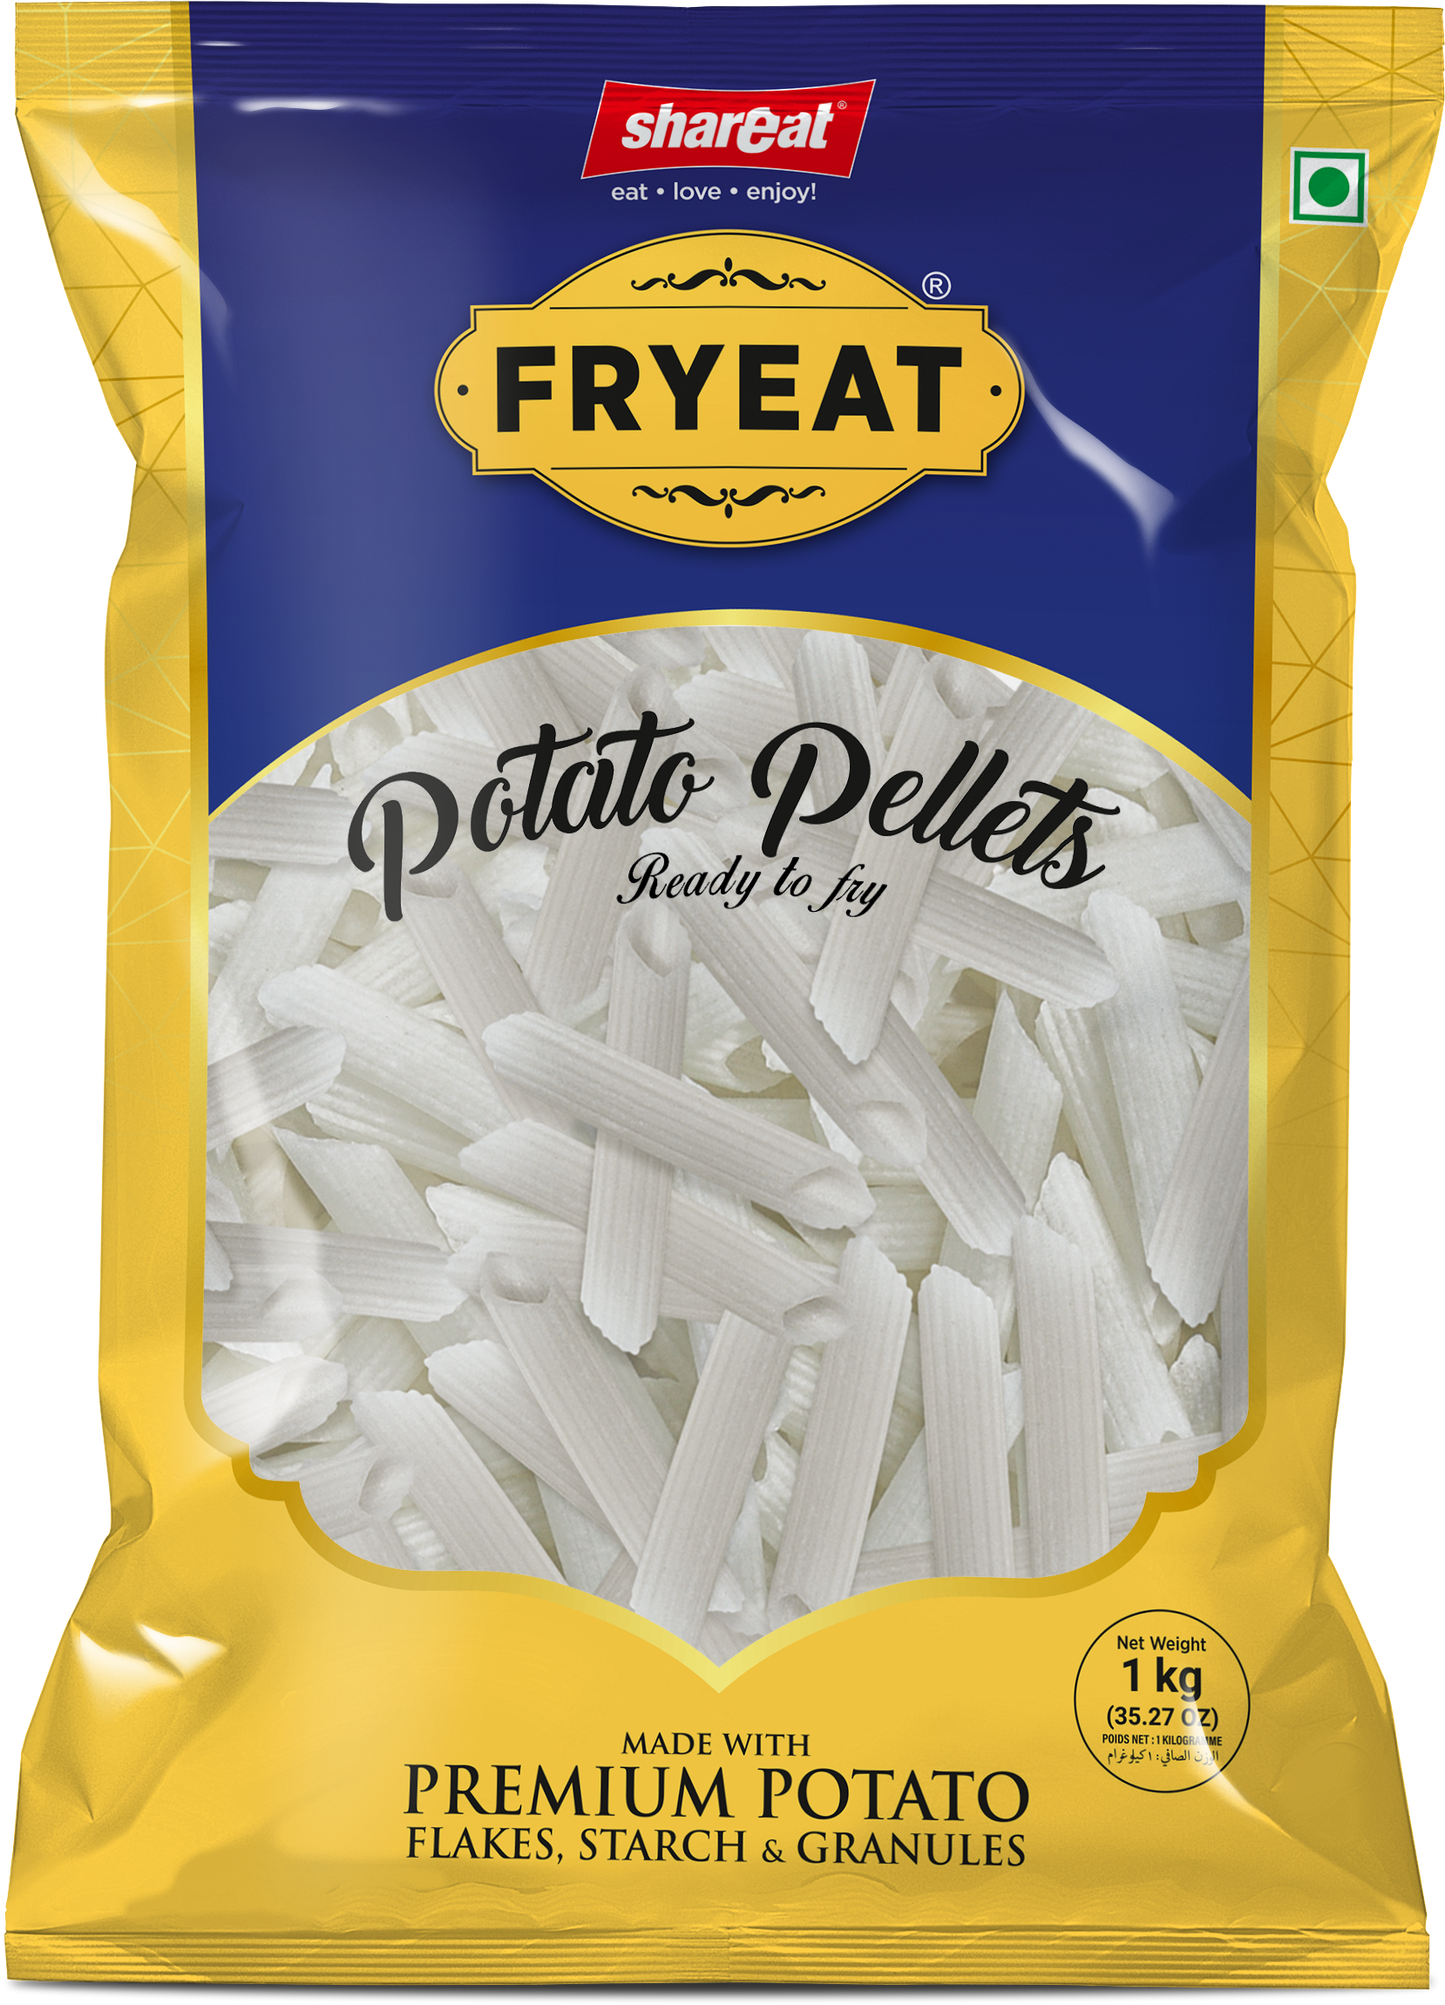 Fryeat Potato Pellets Penne